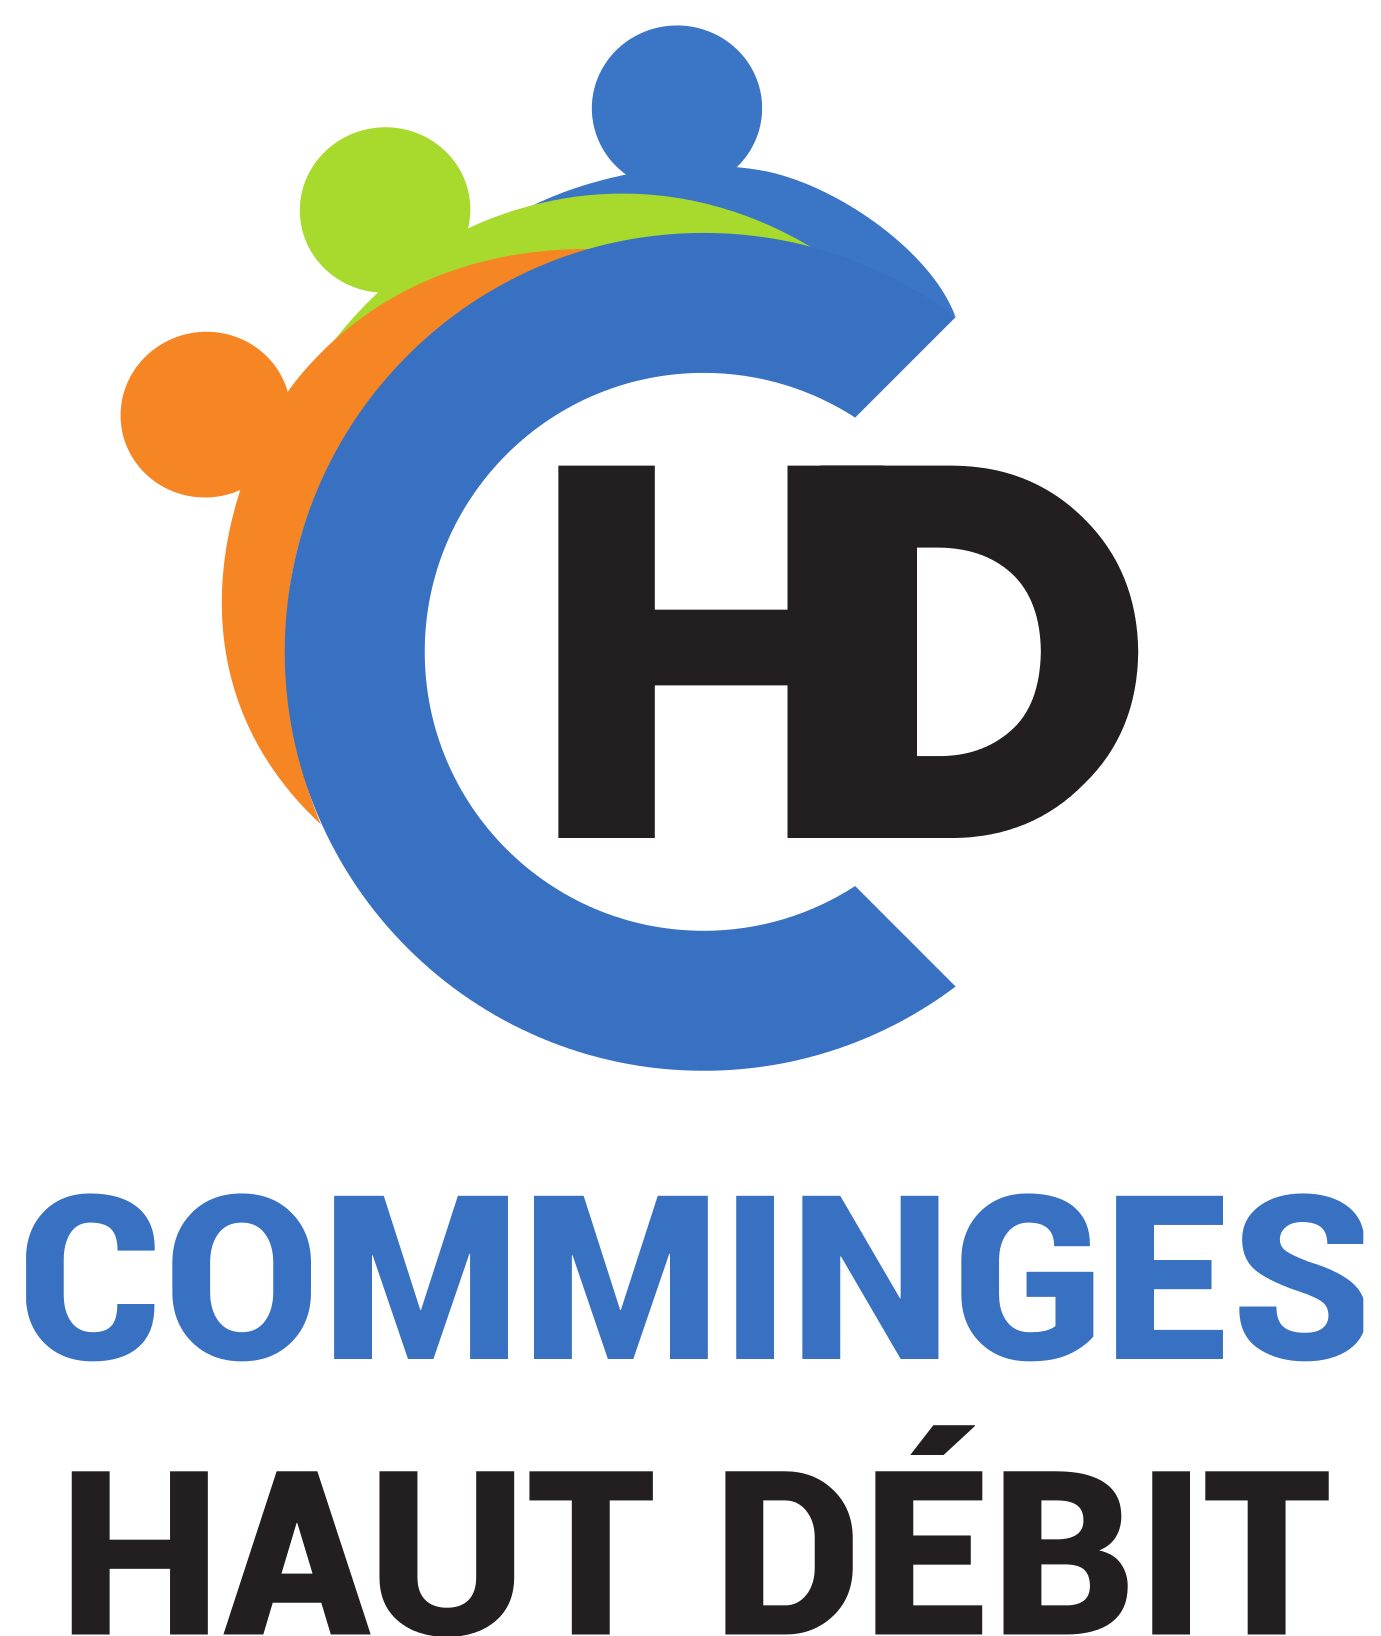 Logo CHD